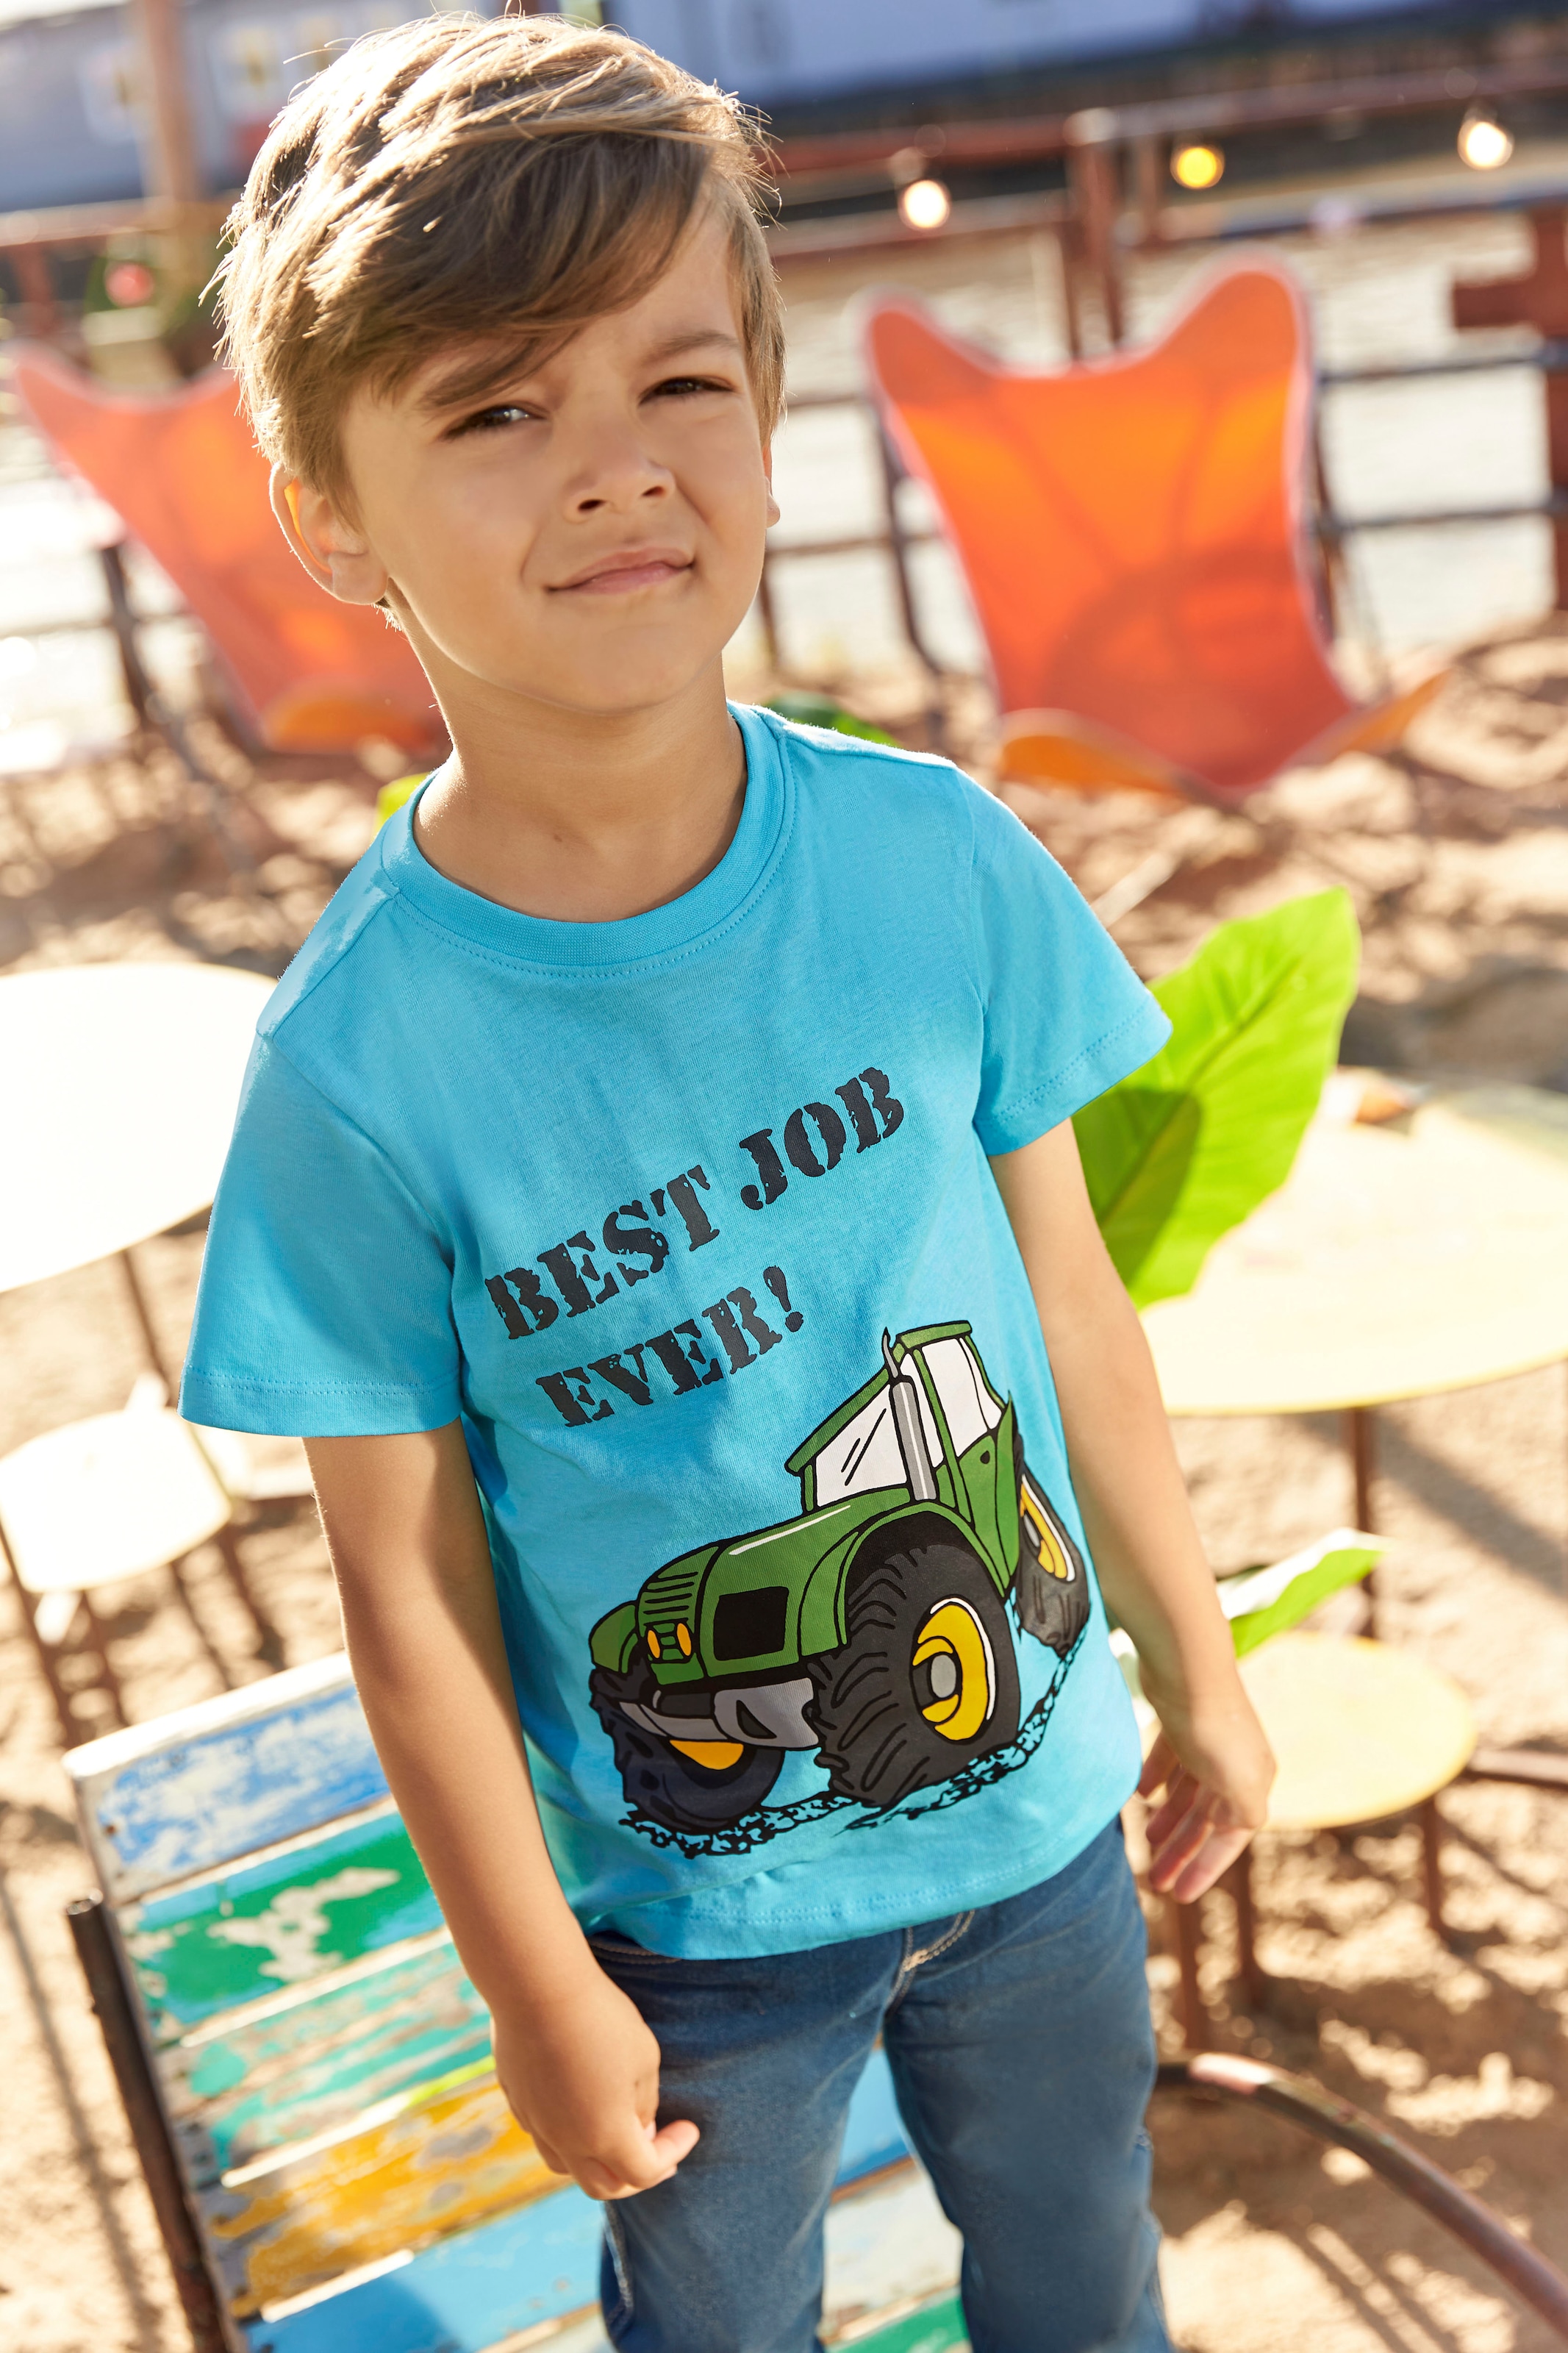 KIDSWORLD T-Shirt »BEST JOB EVER!«